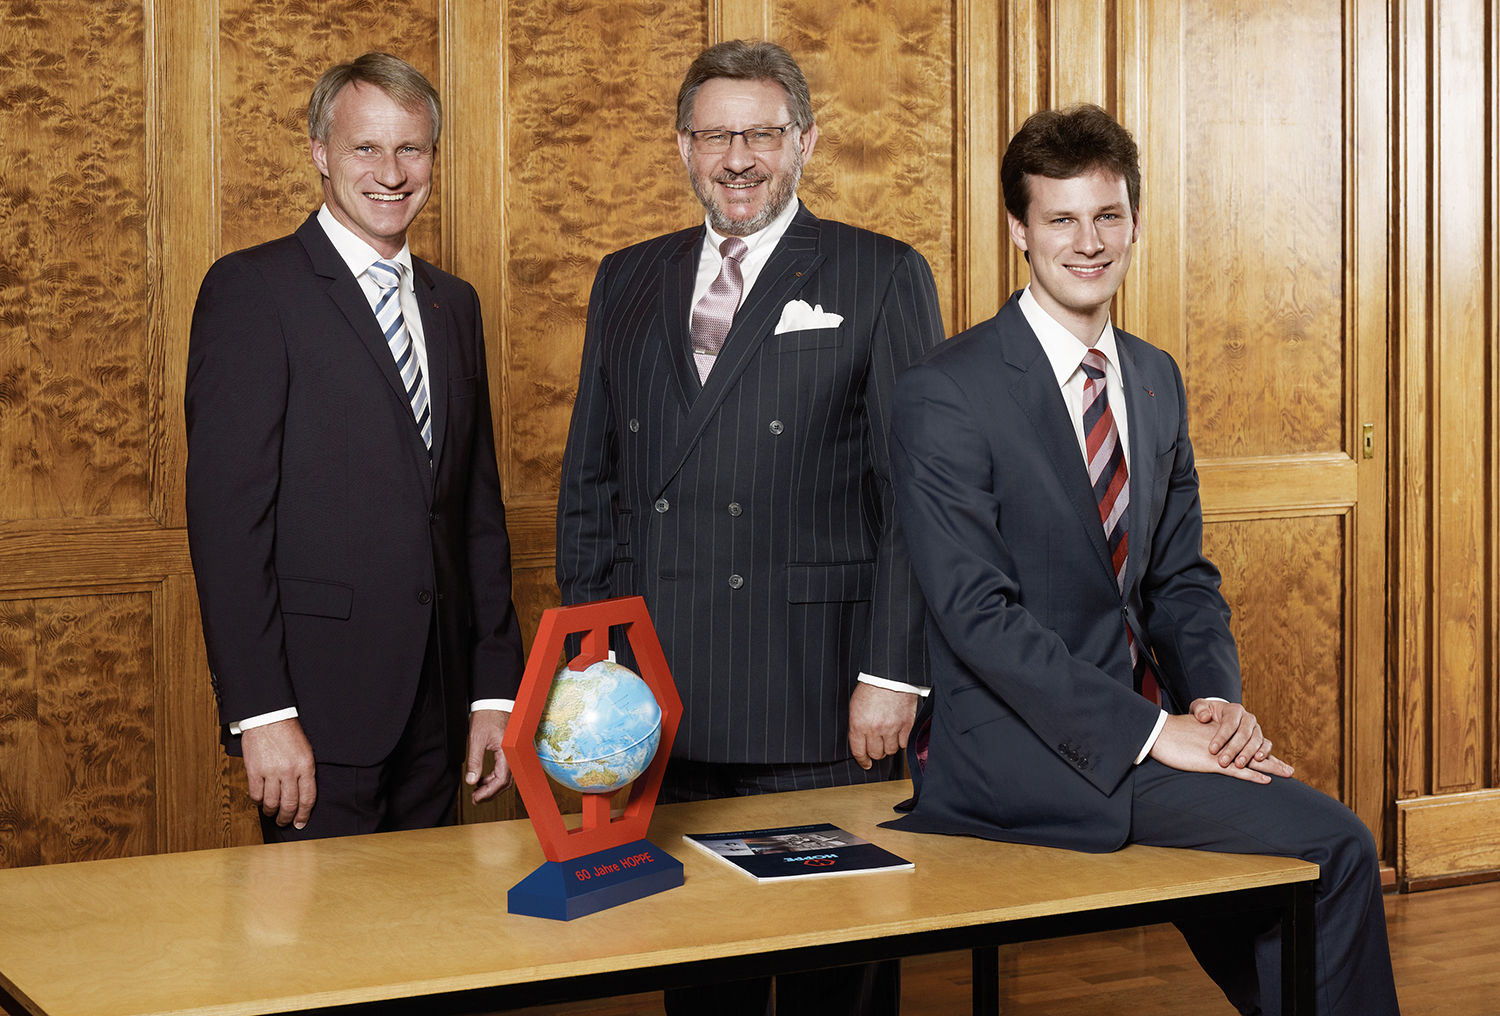 The entrepreneurs: Christoph Hoppe, Wolf Hoppe and Christian Hoppe